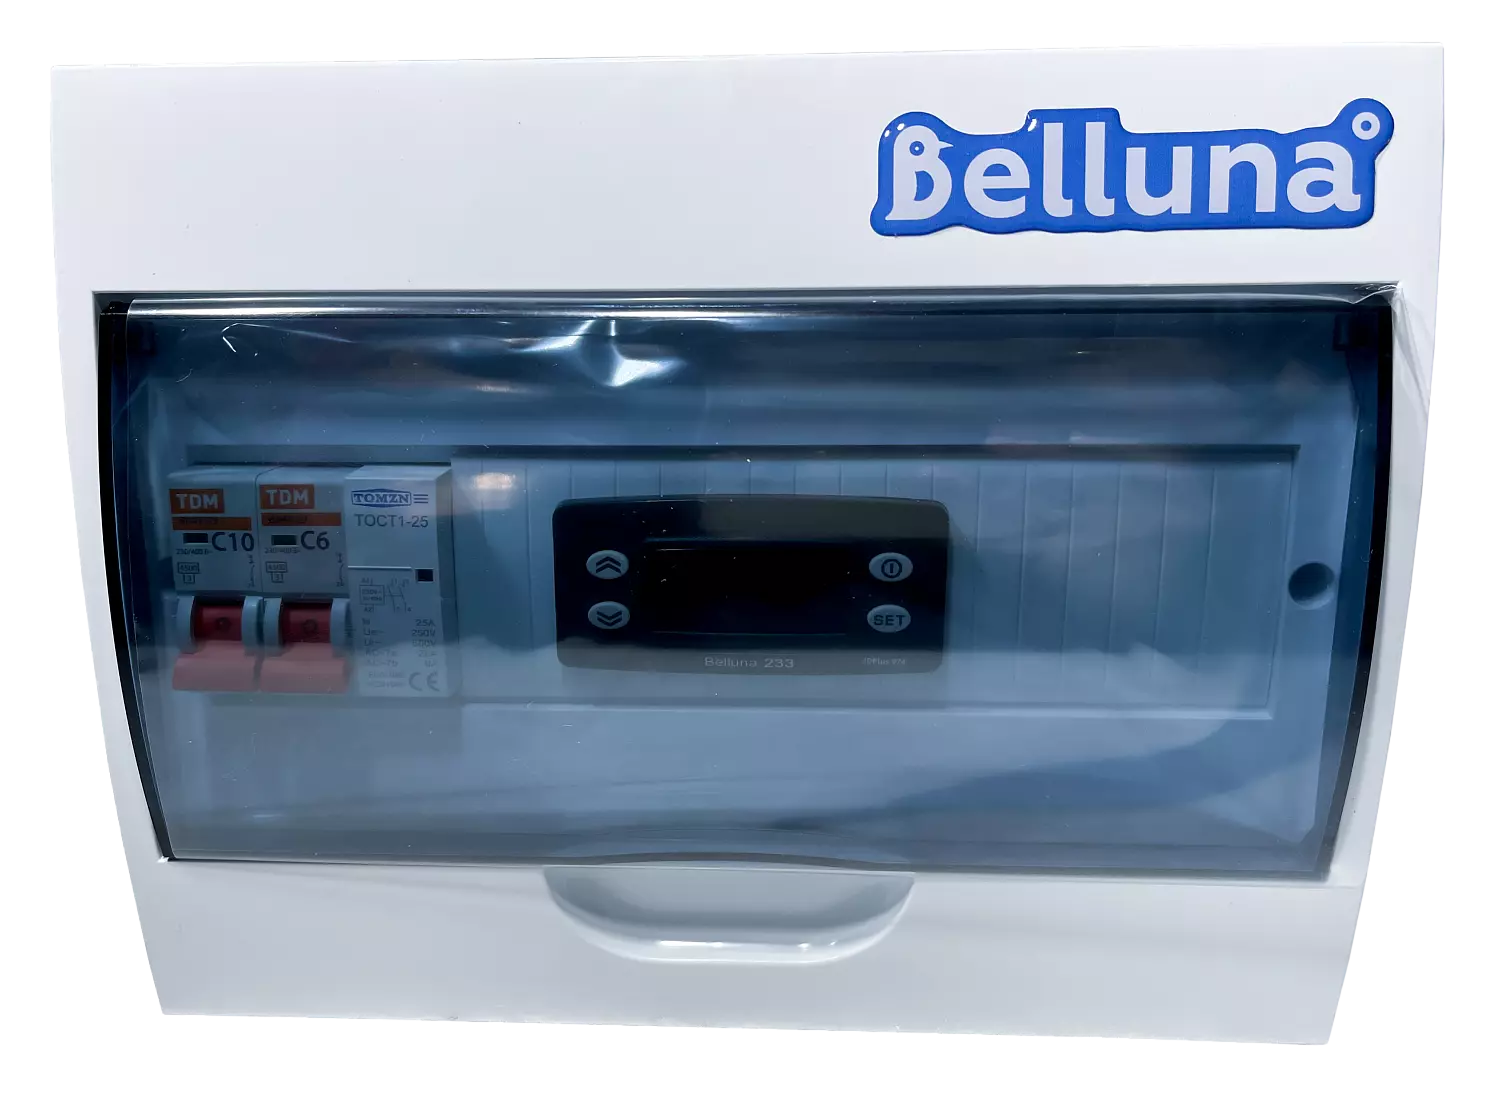 сплит-система Belluna U102-1 Воронеж